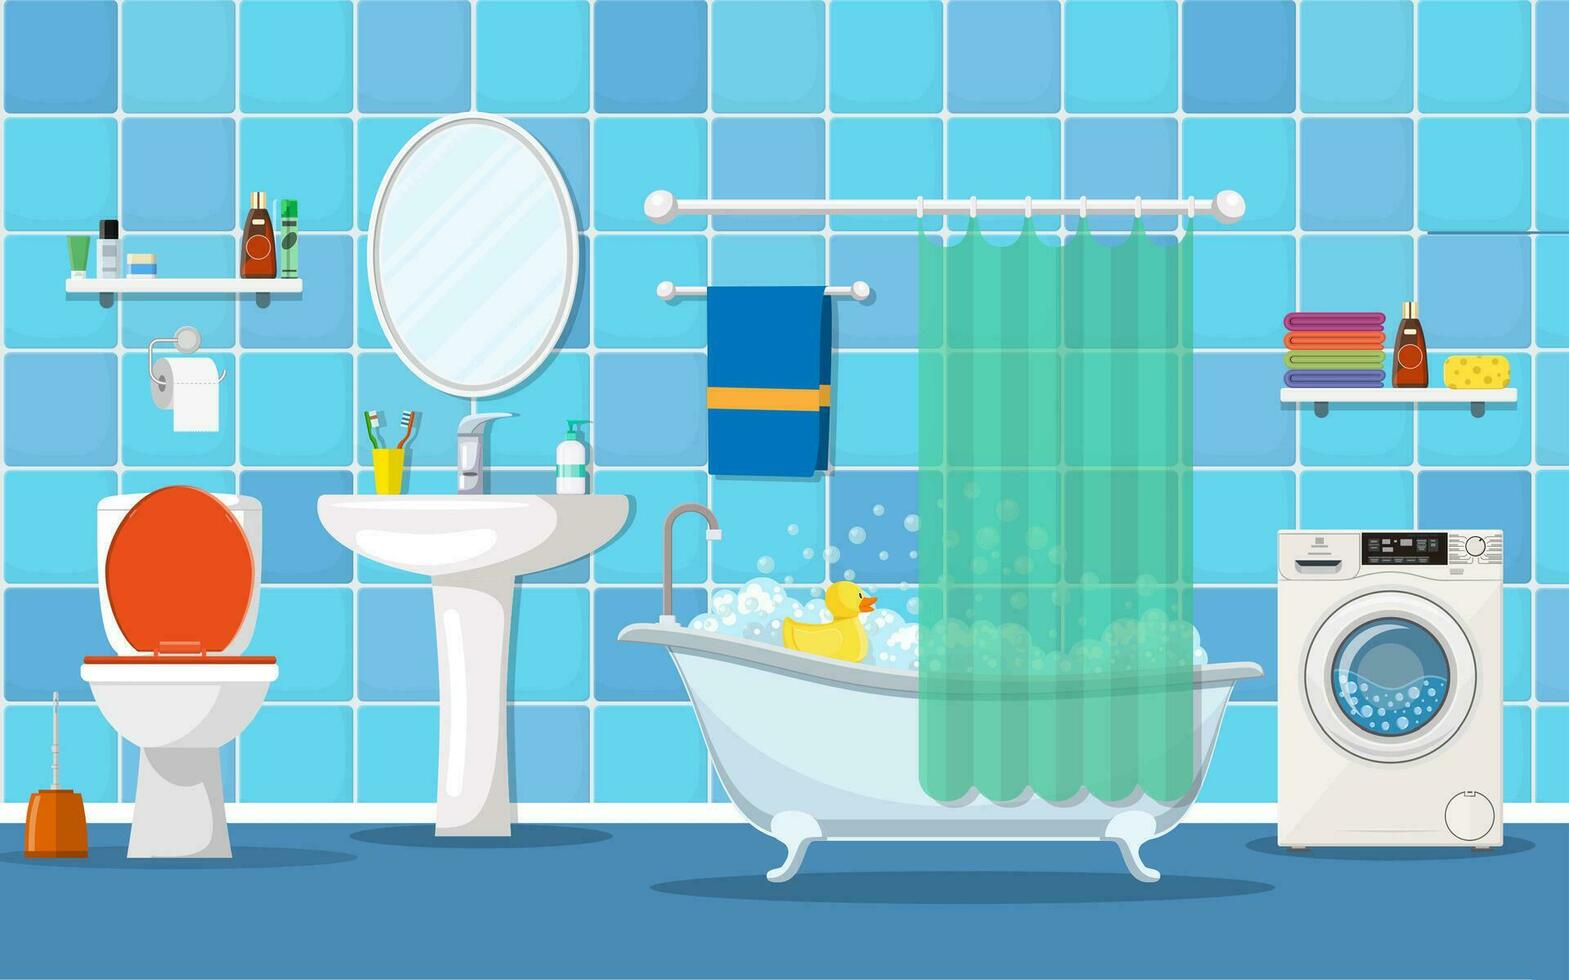 moderno banheiro interior com mobiliário. casa interior objetos - banho, quadrado espelho, lavar bacia. vetor ilustração dentro plano estilo